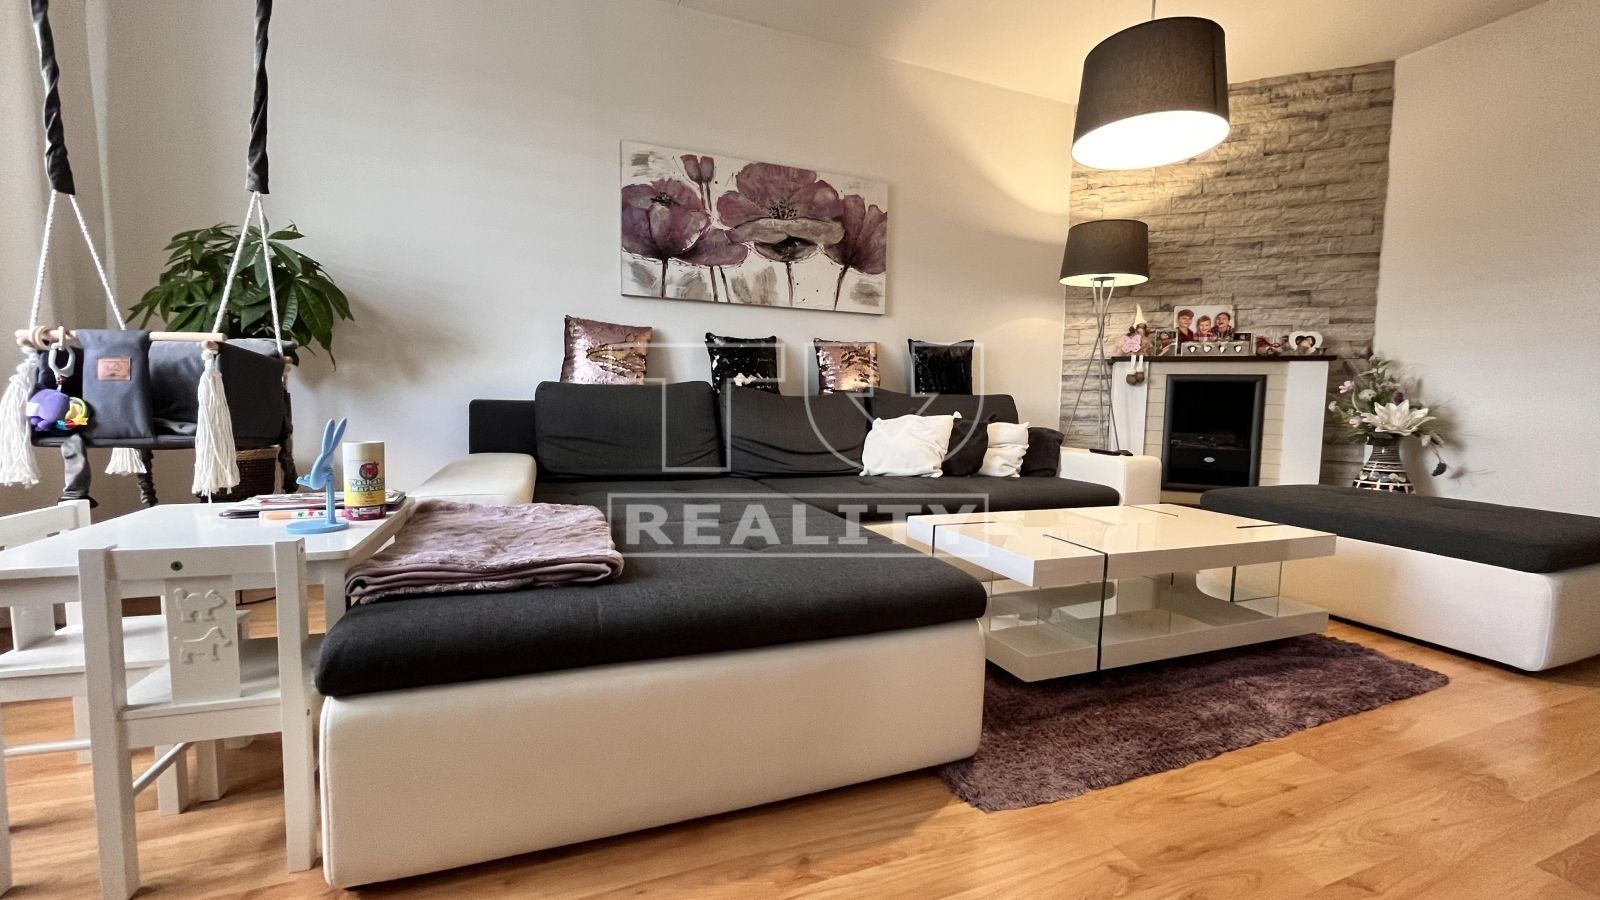 TUreality ponúka na predaj pekný 3i byt v na sídlisku Západ vo Zvolene o výmere 73 m²